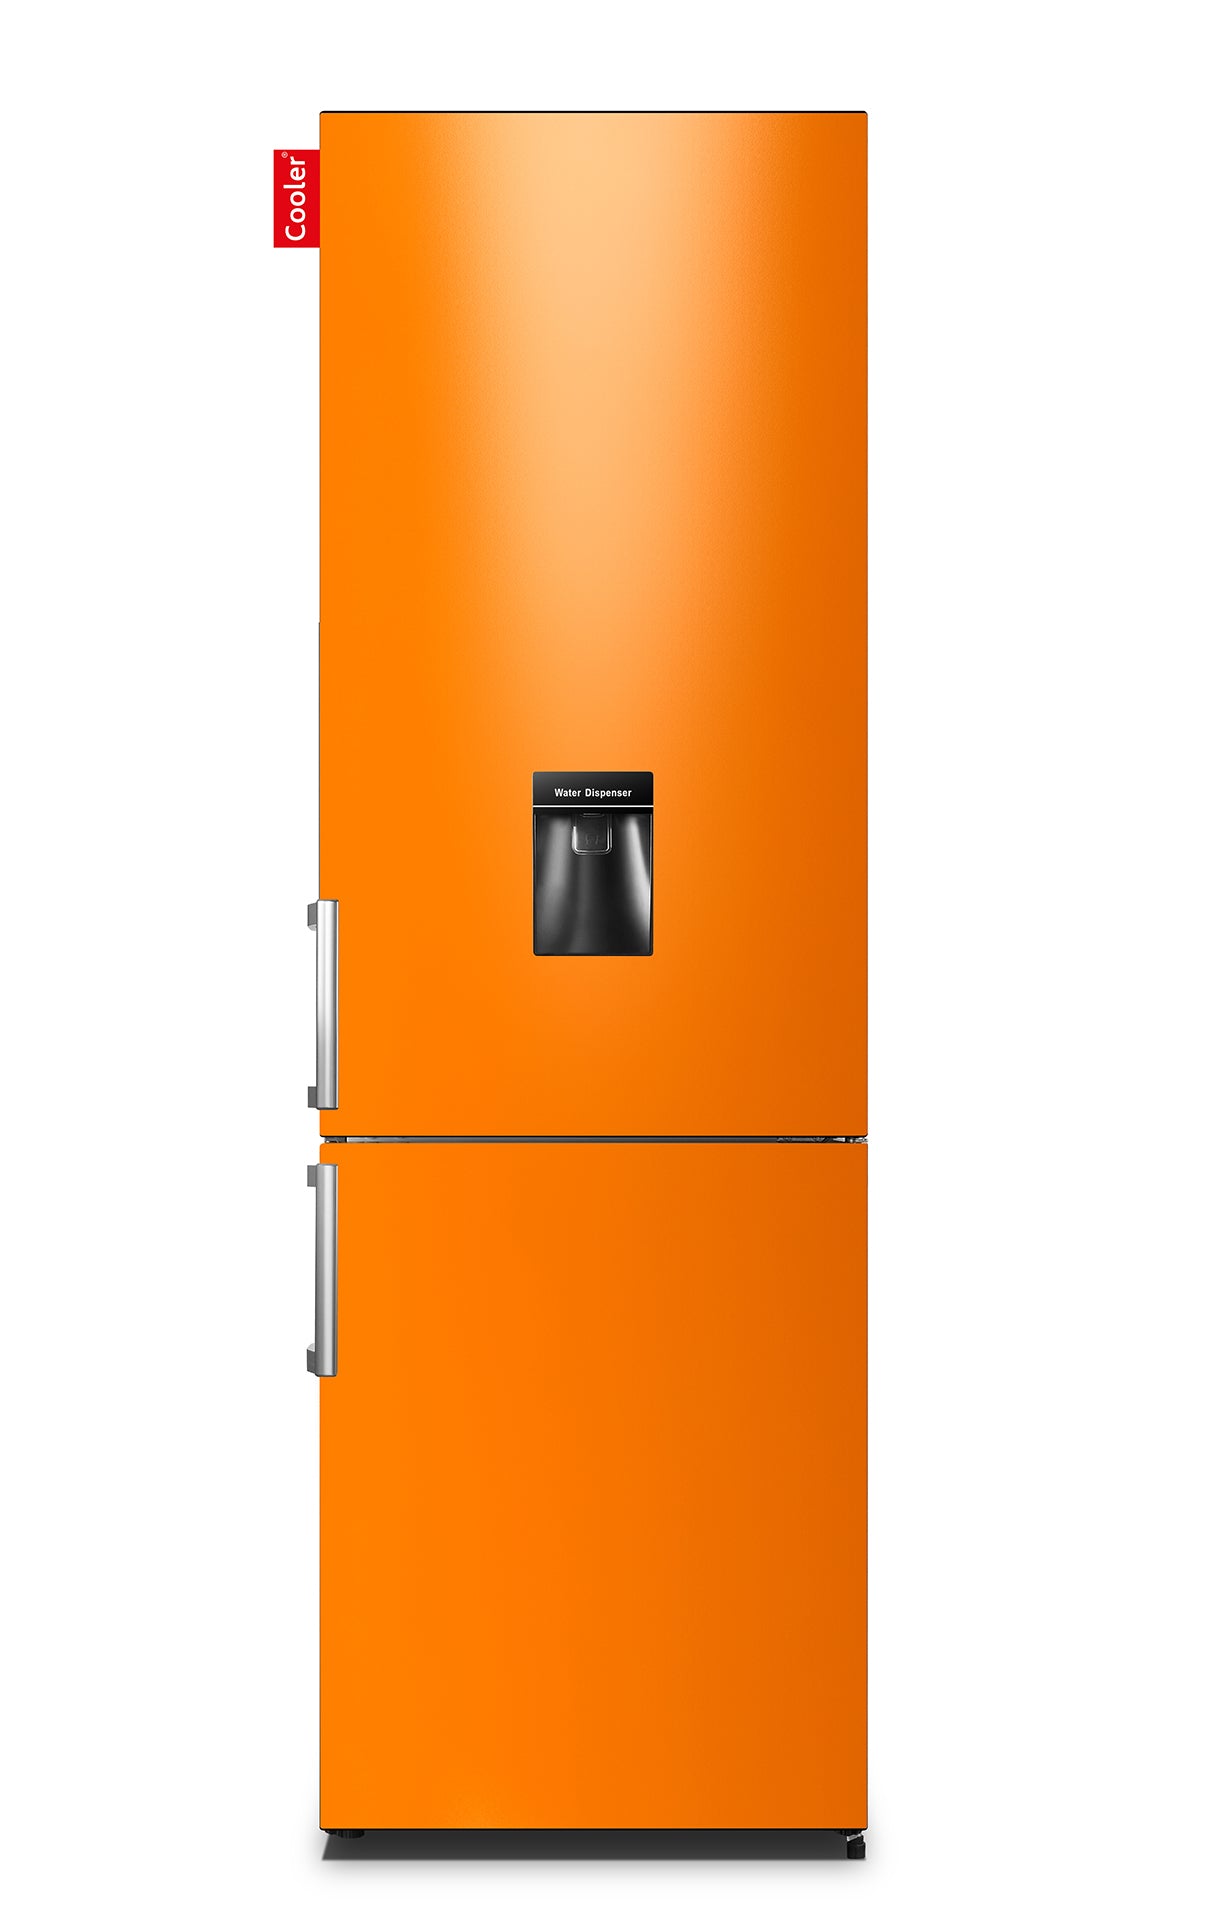 Wardianzaak Huisdieren Promotie Groot H2O Original - Cooler® gepersonaliseerde koelkast